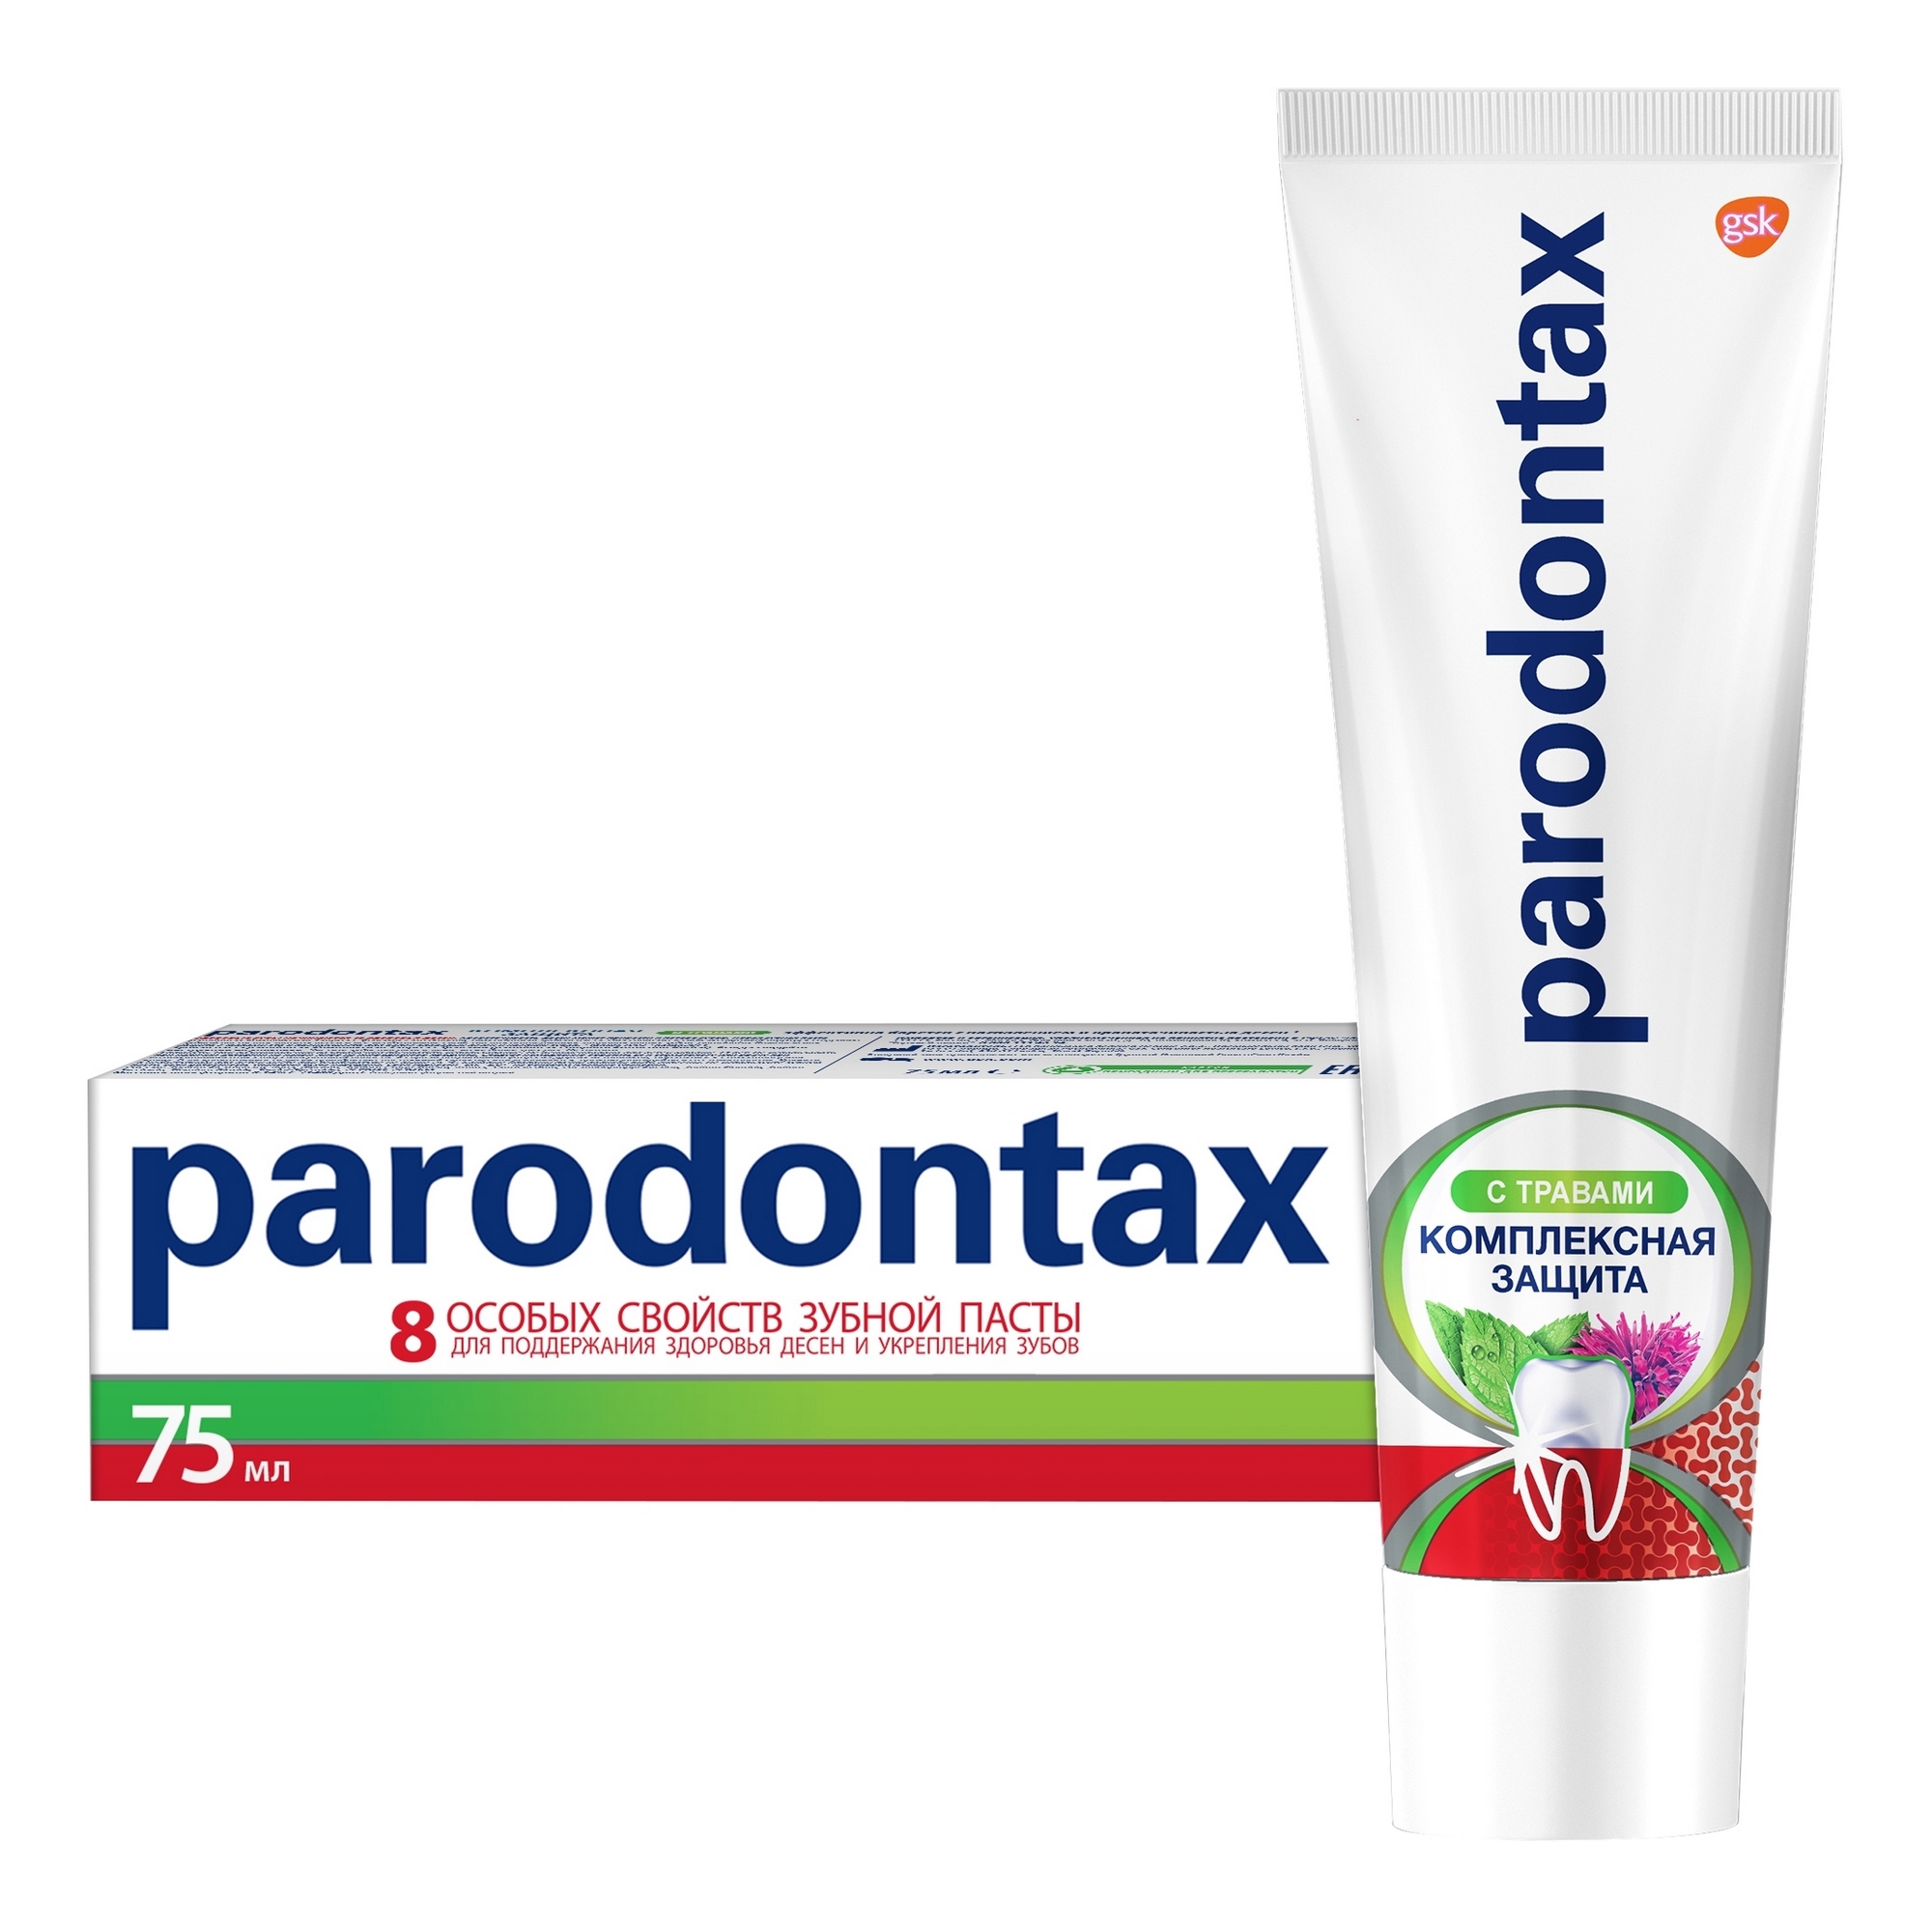 Зубная паста Parodontax Комплексная защита с травами 75 мл зубная паста paradontax комплексная защита экстра свежесть 75 мл